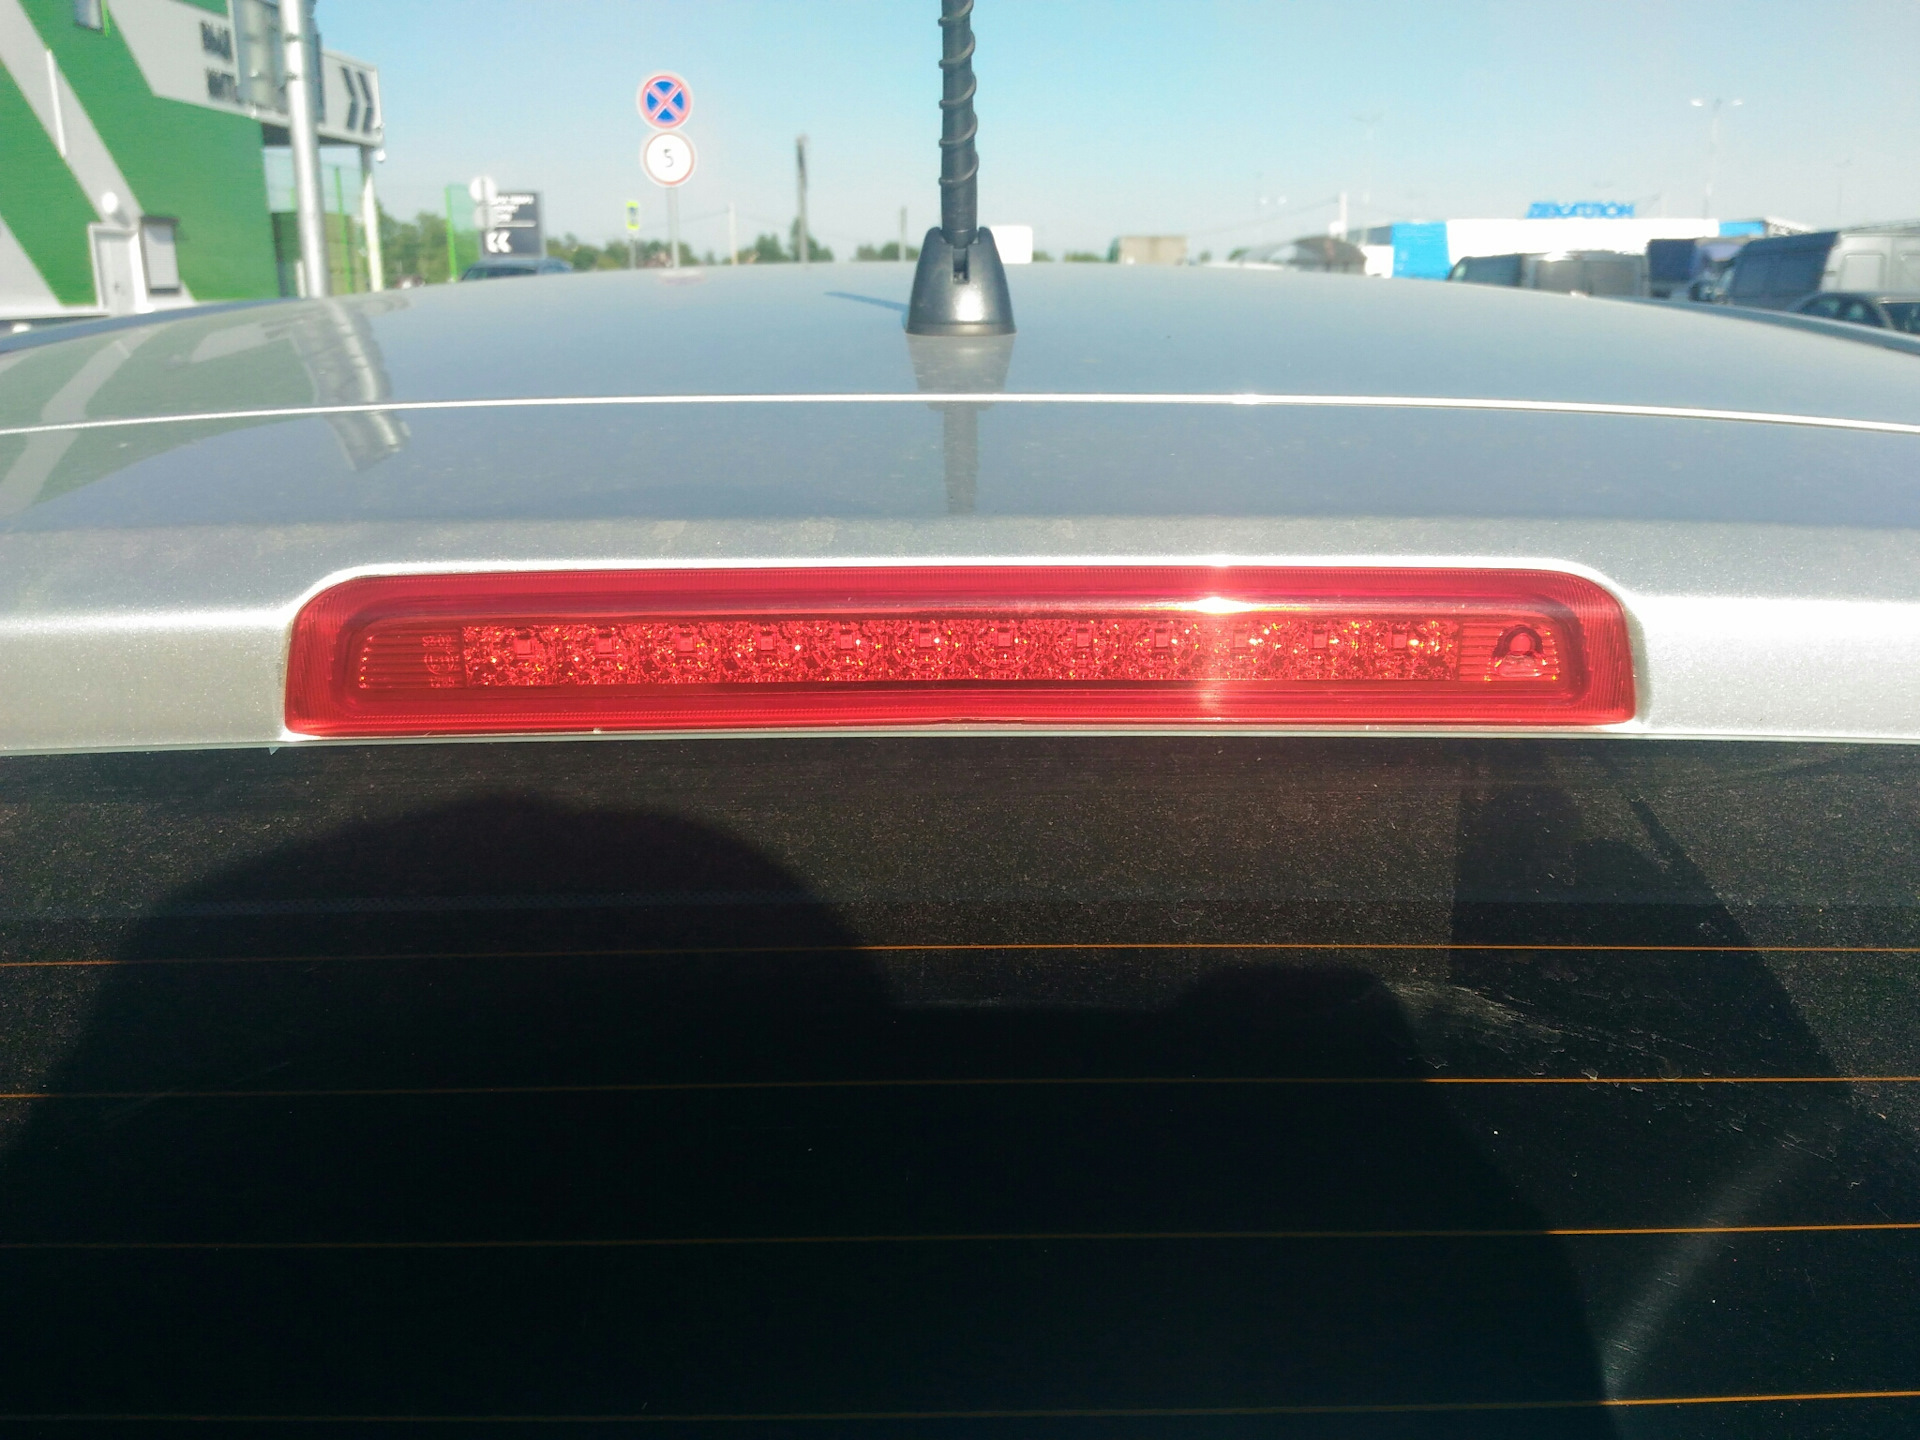 Задний доп стоп сигнал. Задний повторитель стоп сигнала Хендай i30. Дополнительный стоп сигнал акцент ТАГАЗ. Дополнительный стоп сигнал Hyundai Accent. Стоп сигнал Hyundai i30 2013.